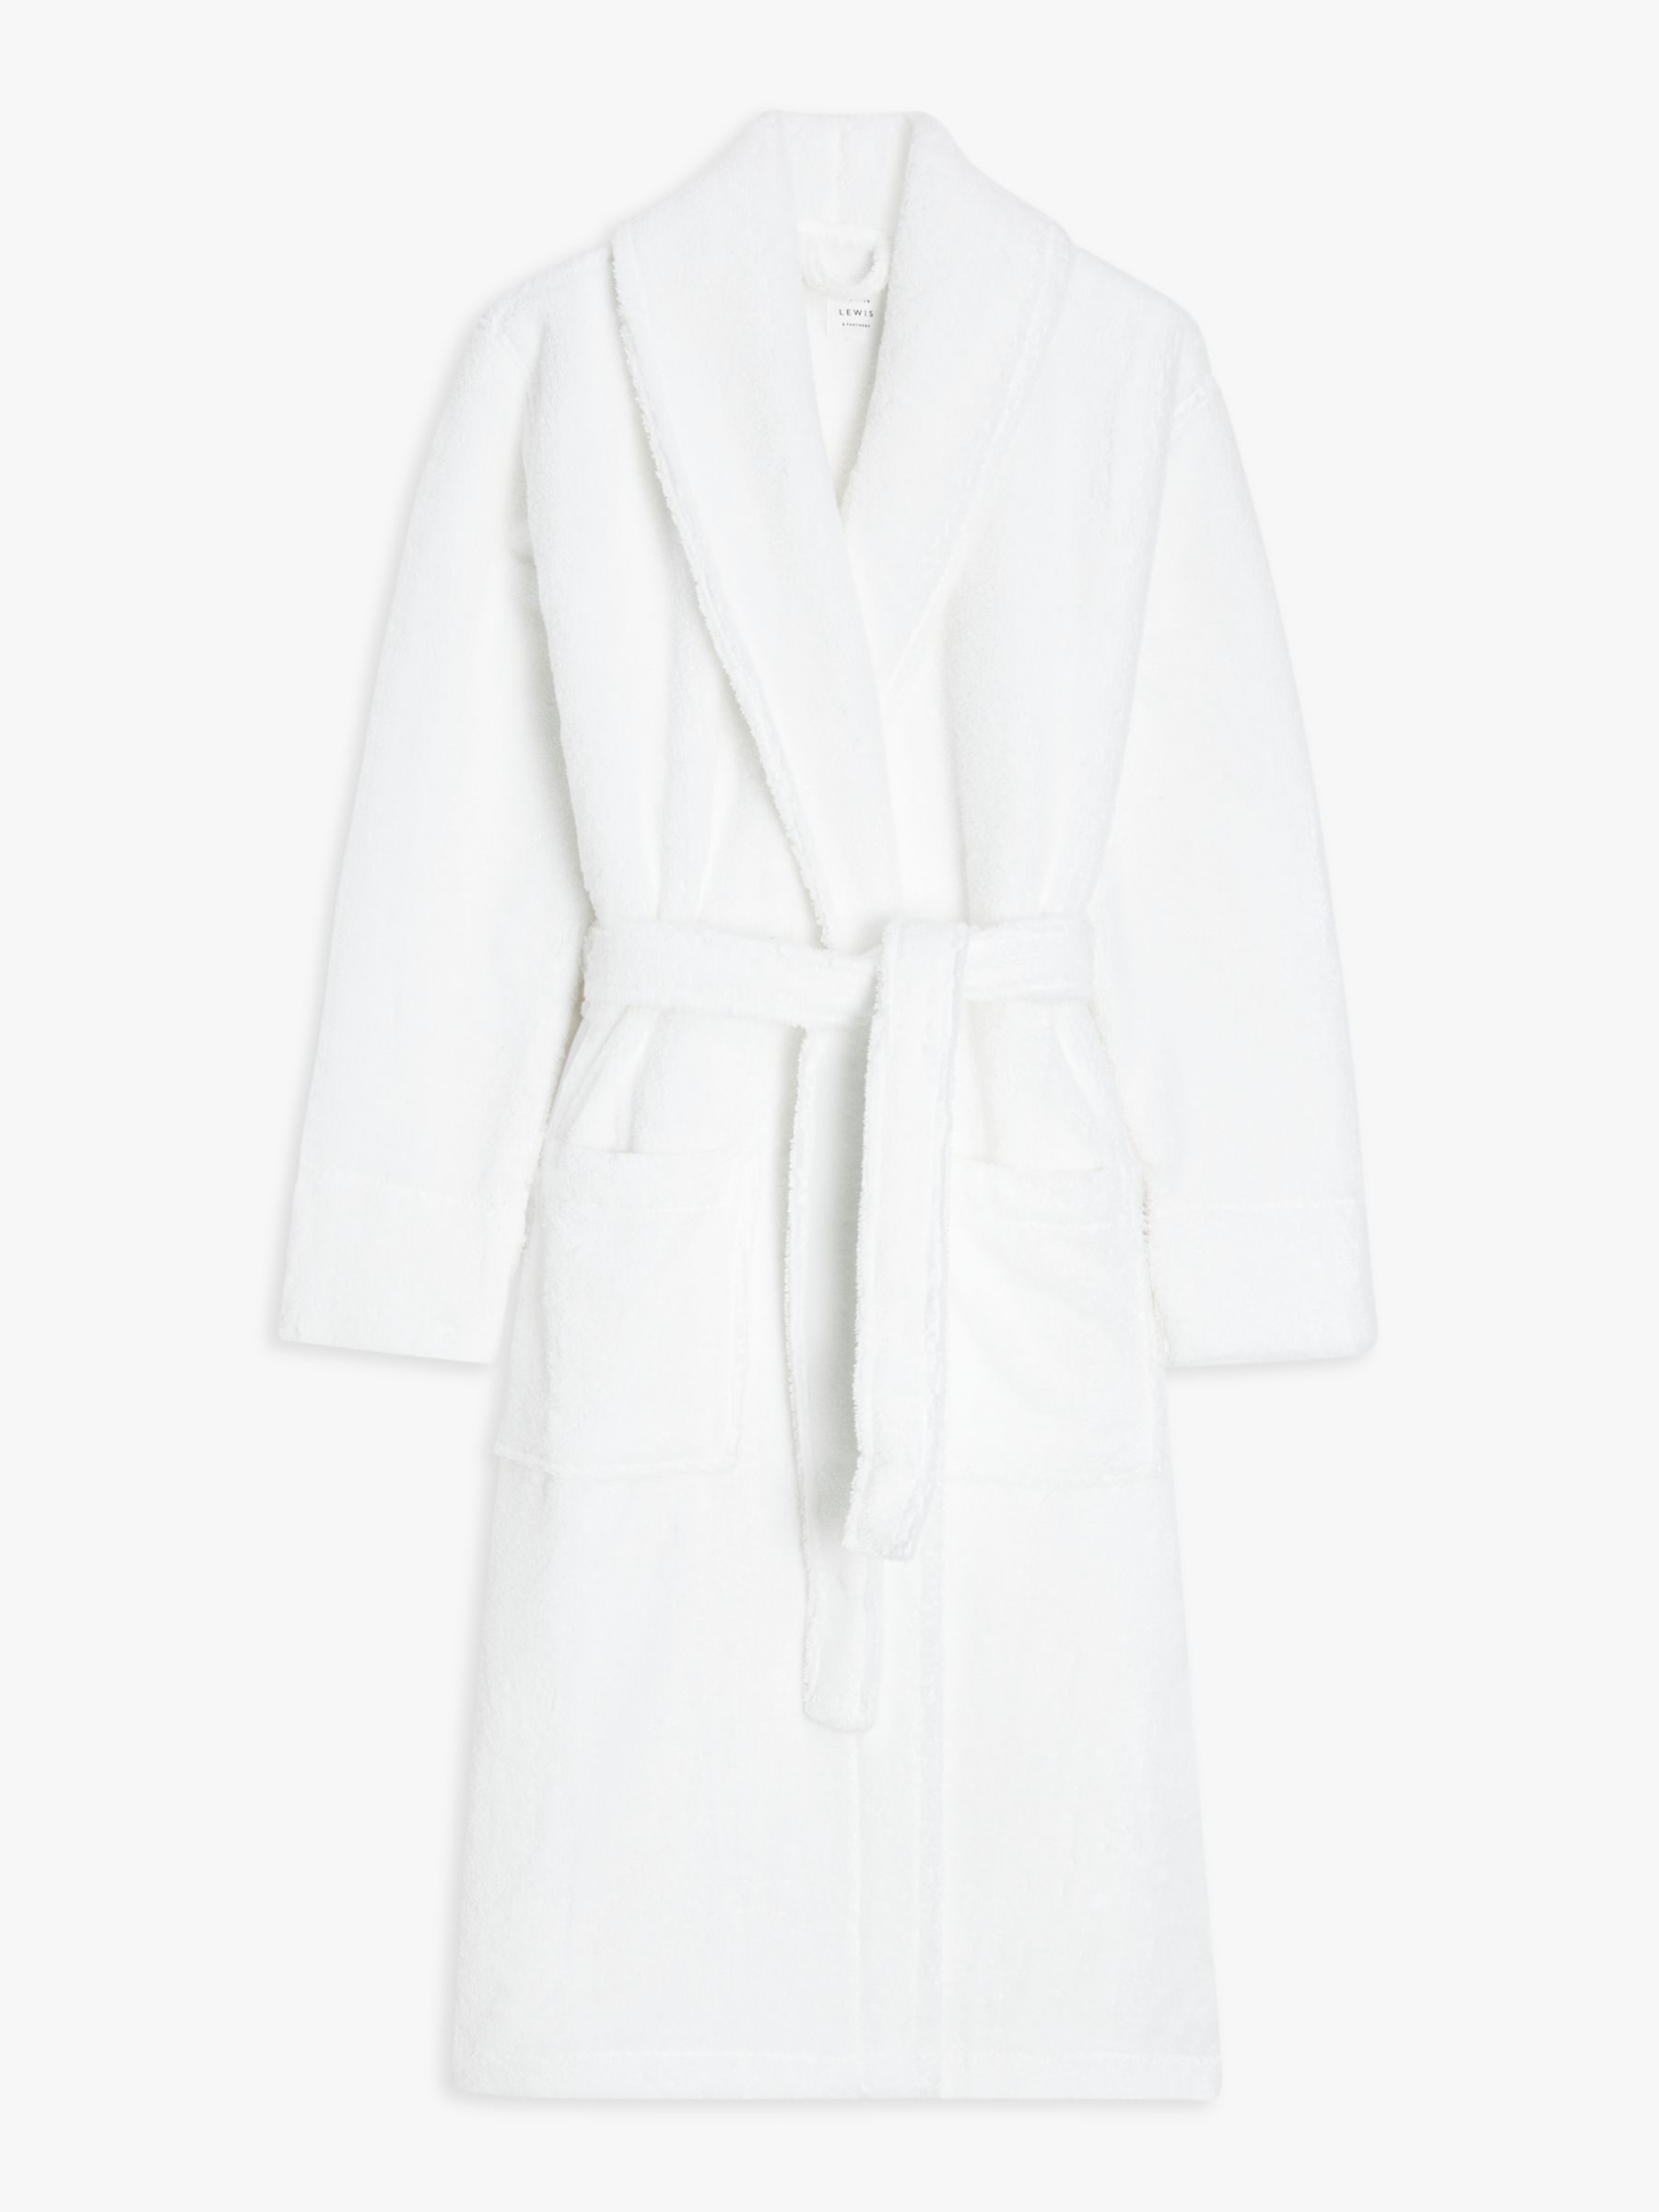 John Lewis Luxury Towelling Robe, White at John Lewis & Partners